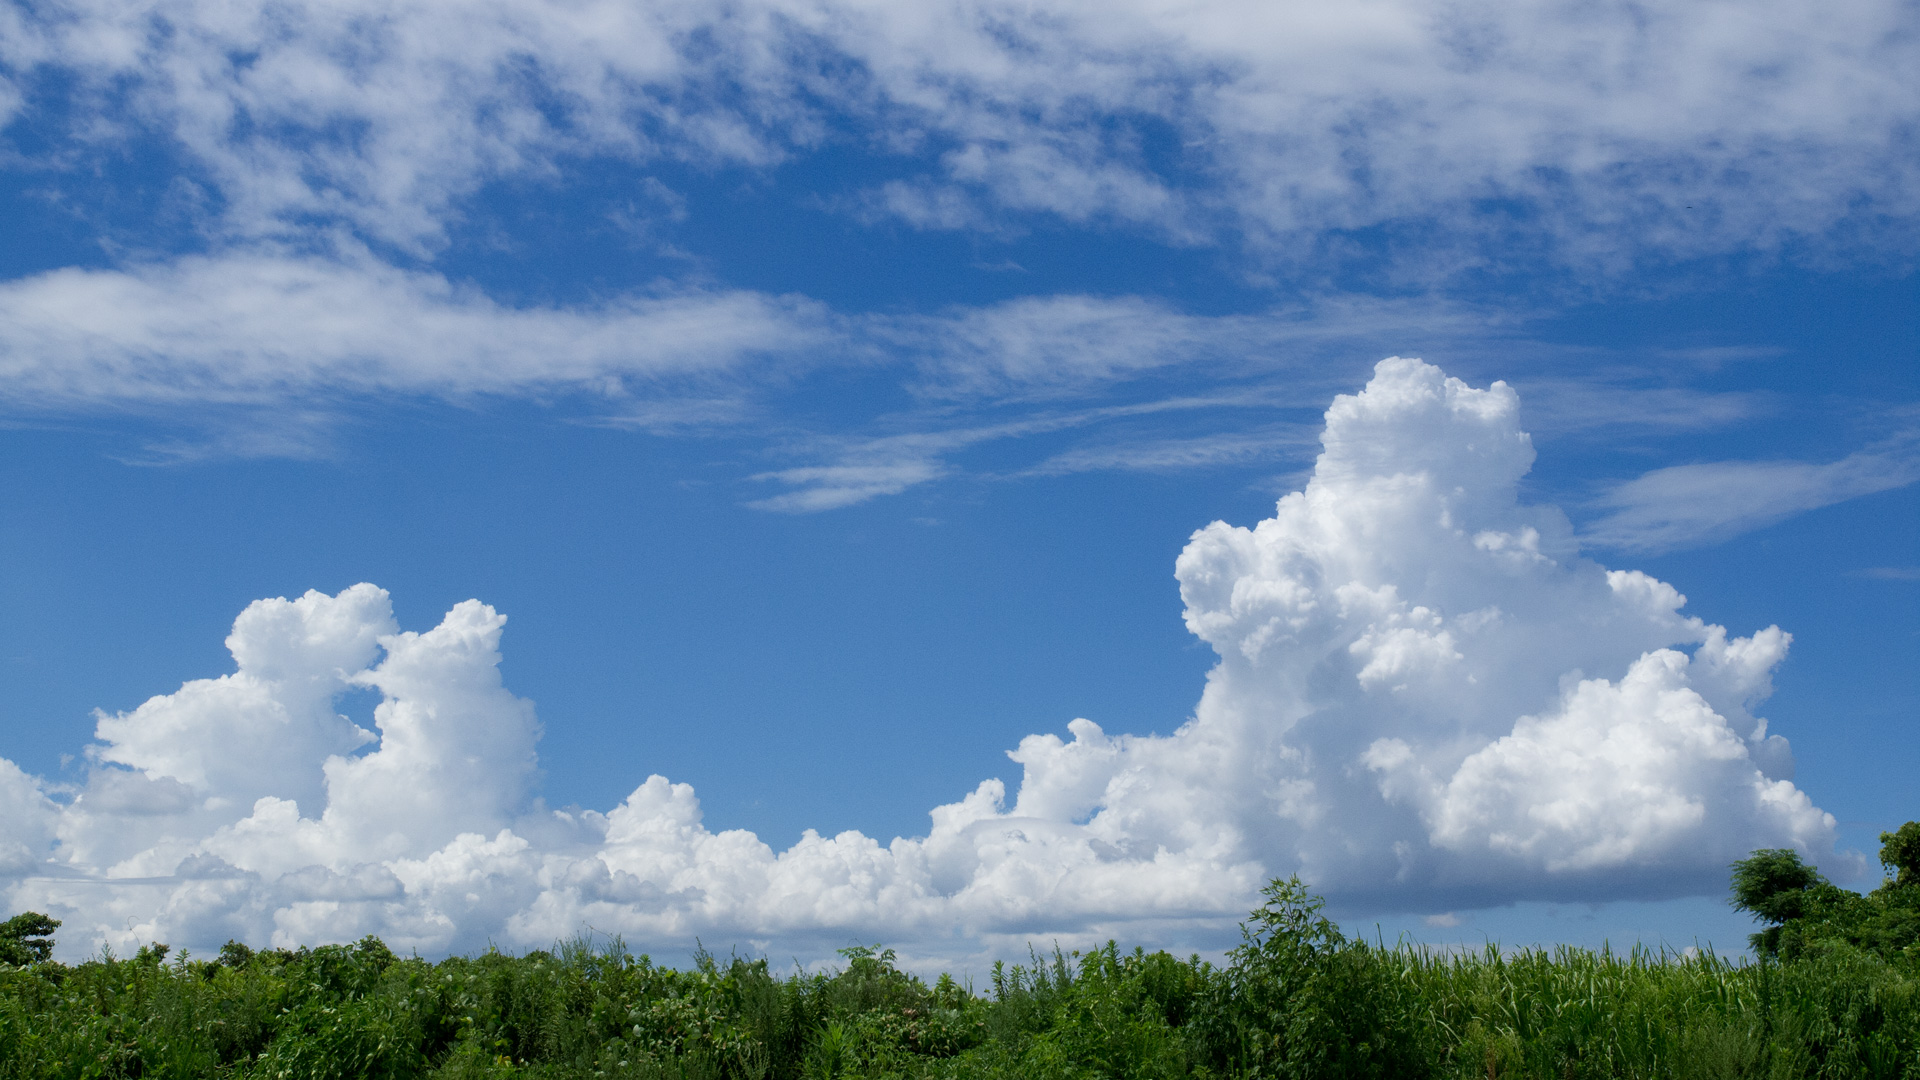 夏の風物詩 青空に入道雲 積乱雲 のデスクトップ壁紙 ワイド画面 1920 1080